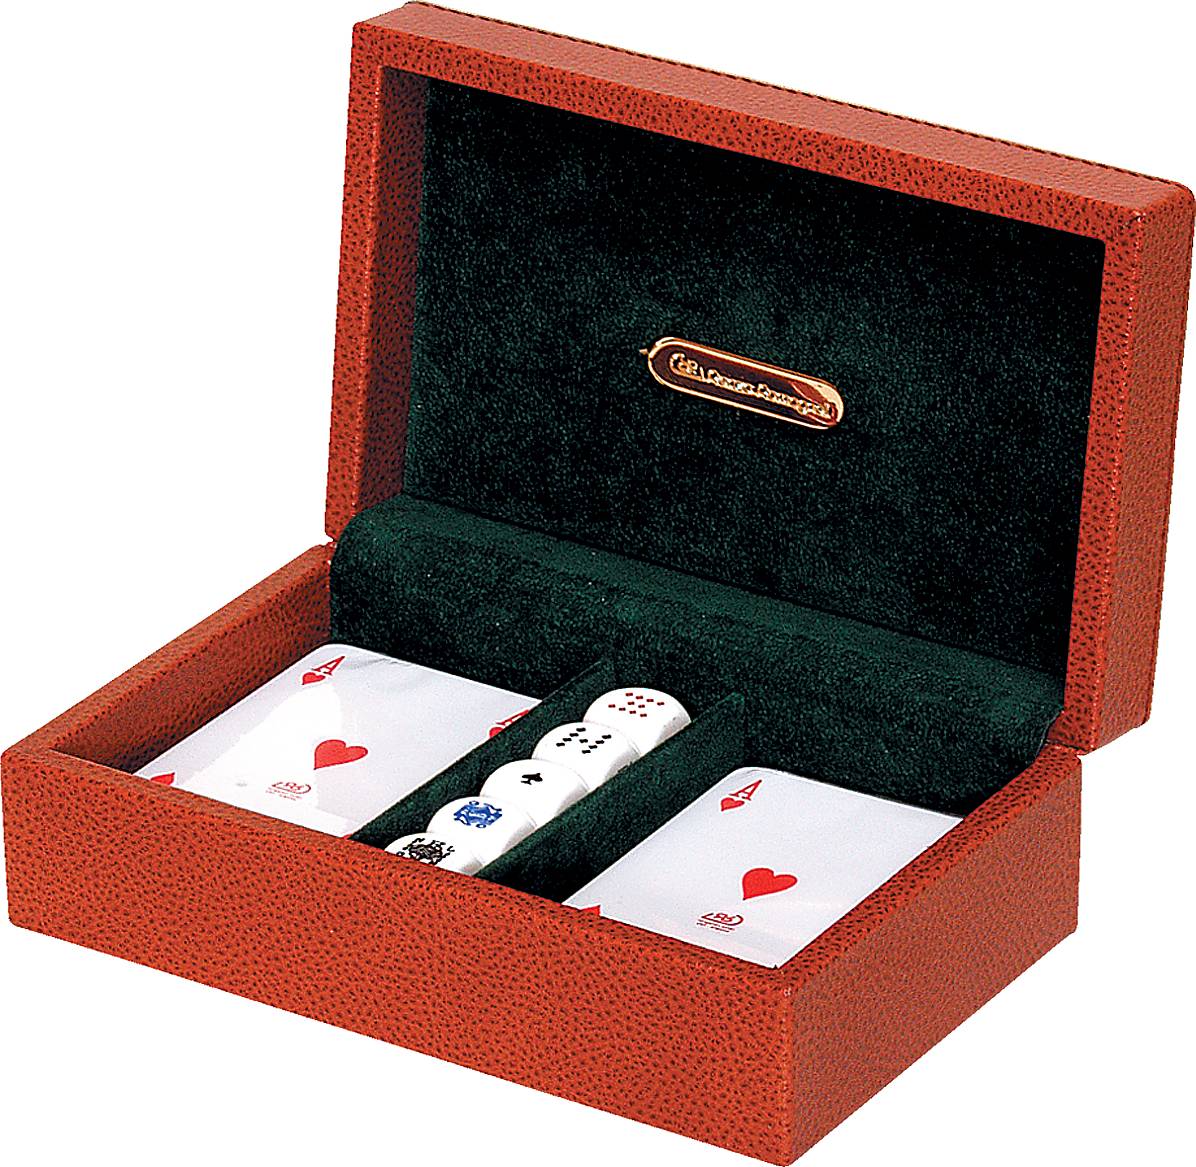 Купить наборы карт. Renzo Romagnoli покерный набор. Набор для покера Renzo Romagnoli q6100k. Renzo Romagnoli покерный набор gsq6255thn. Renzo Romagnoli подарочный набор.